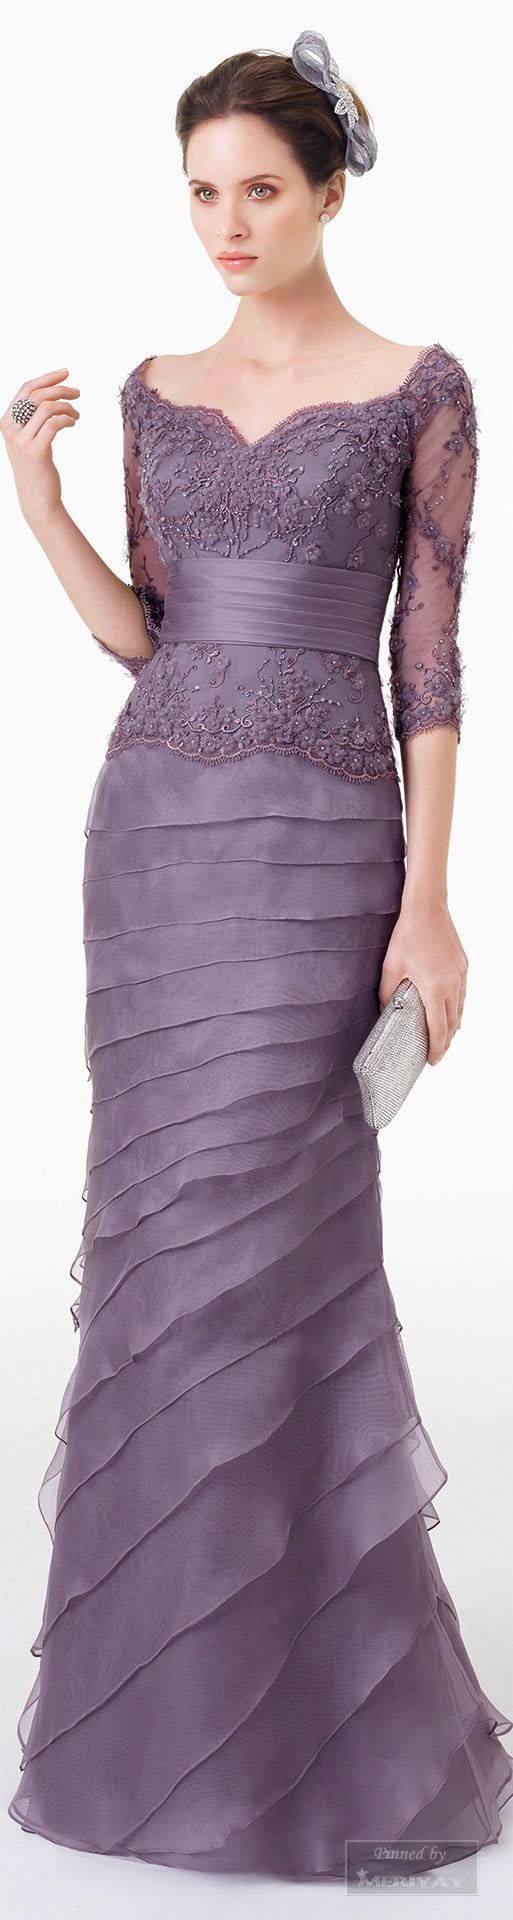 giá may của chiếc đầm dạ hội đẹp màu tím thể hiện sự sang trọng quý phái